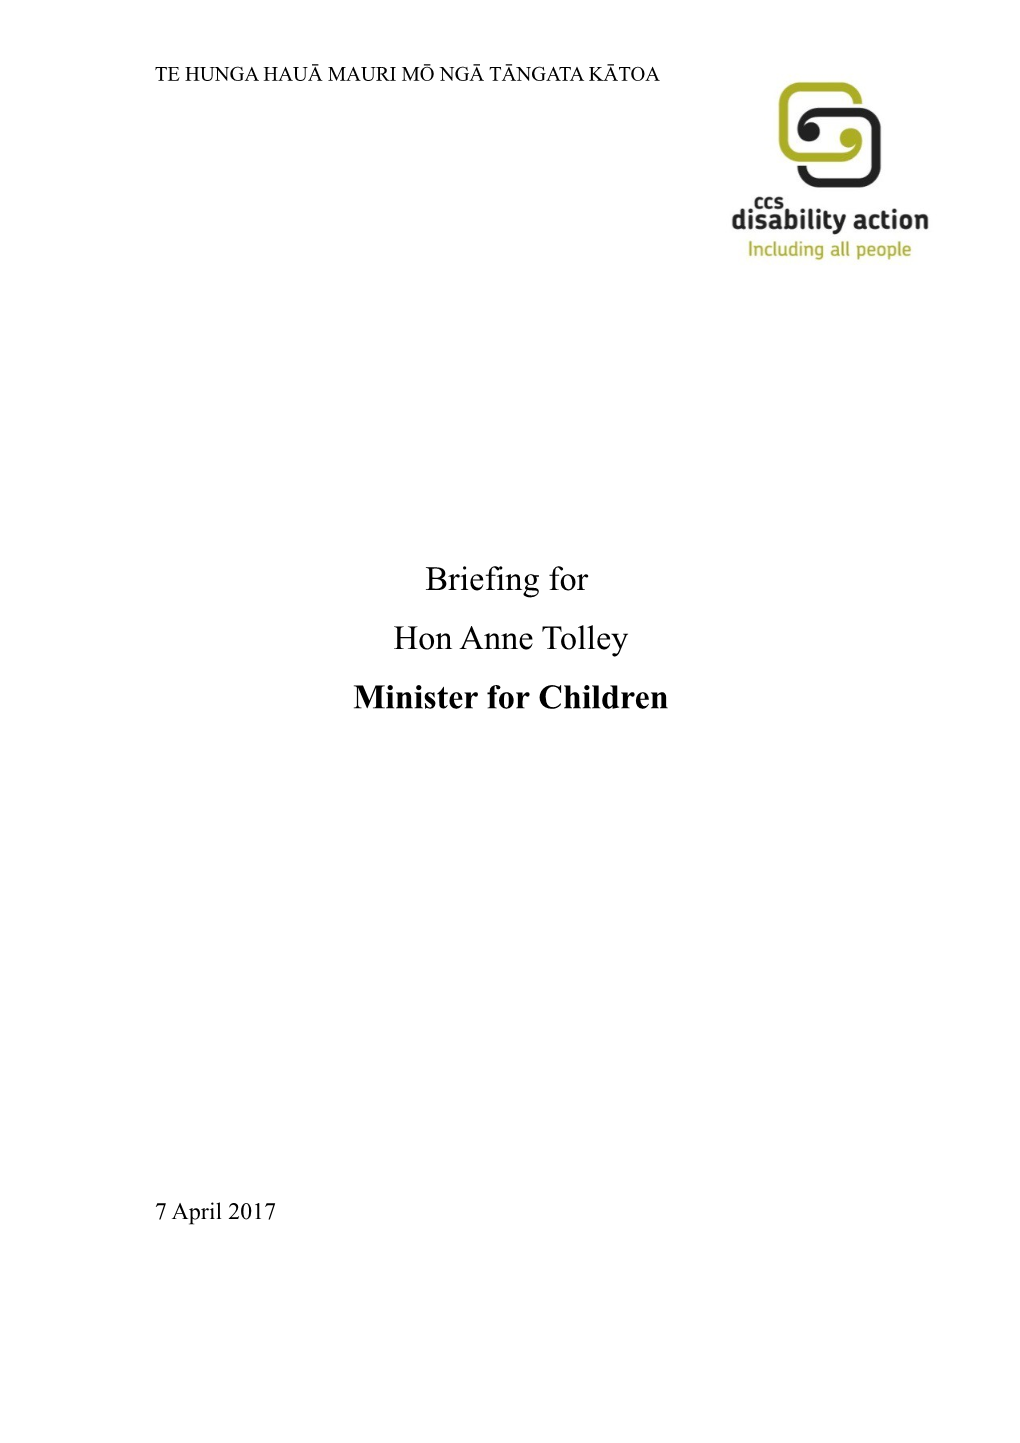 Minister for Children